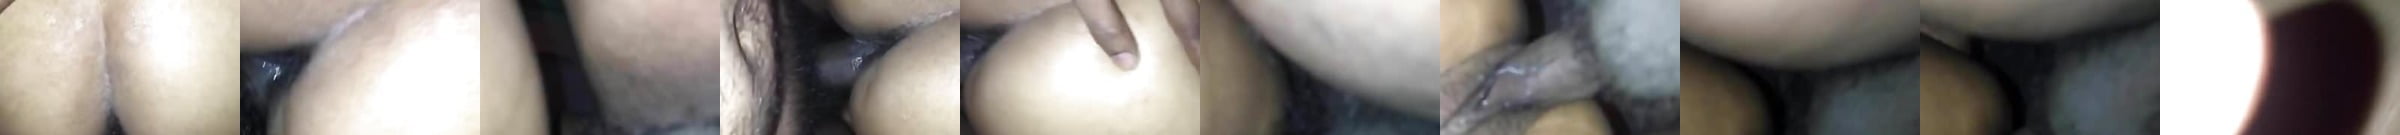 Vidéos Porno Wife Shared With Friend Durée En Vedette 5